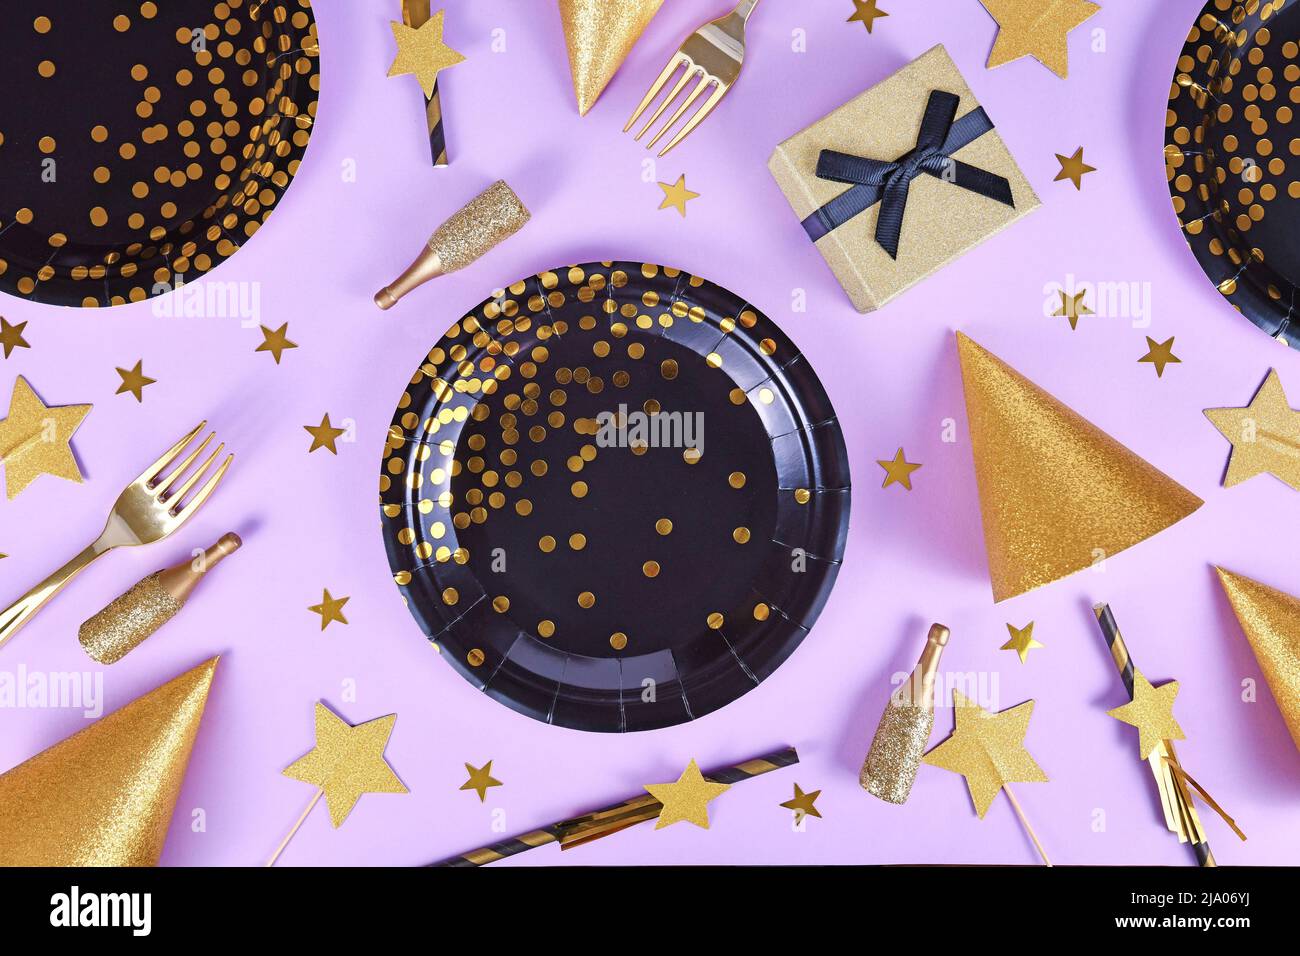 Plat de fête avec assiettes noires et dorées, fourchettes, cadeau, bouteille de champagne et confetti aux étoiles sur fond violet Banque D'Images